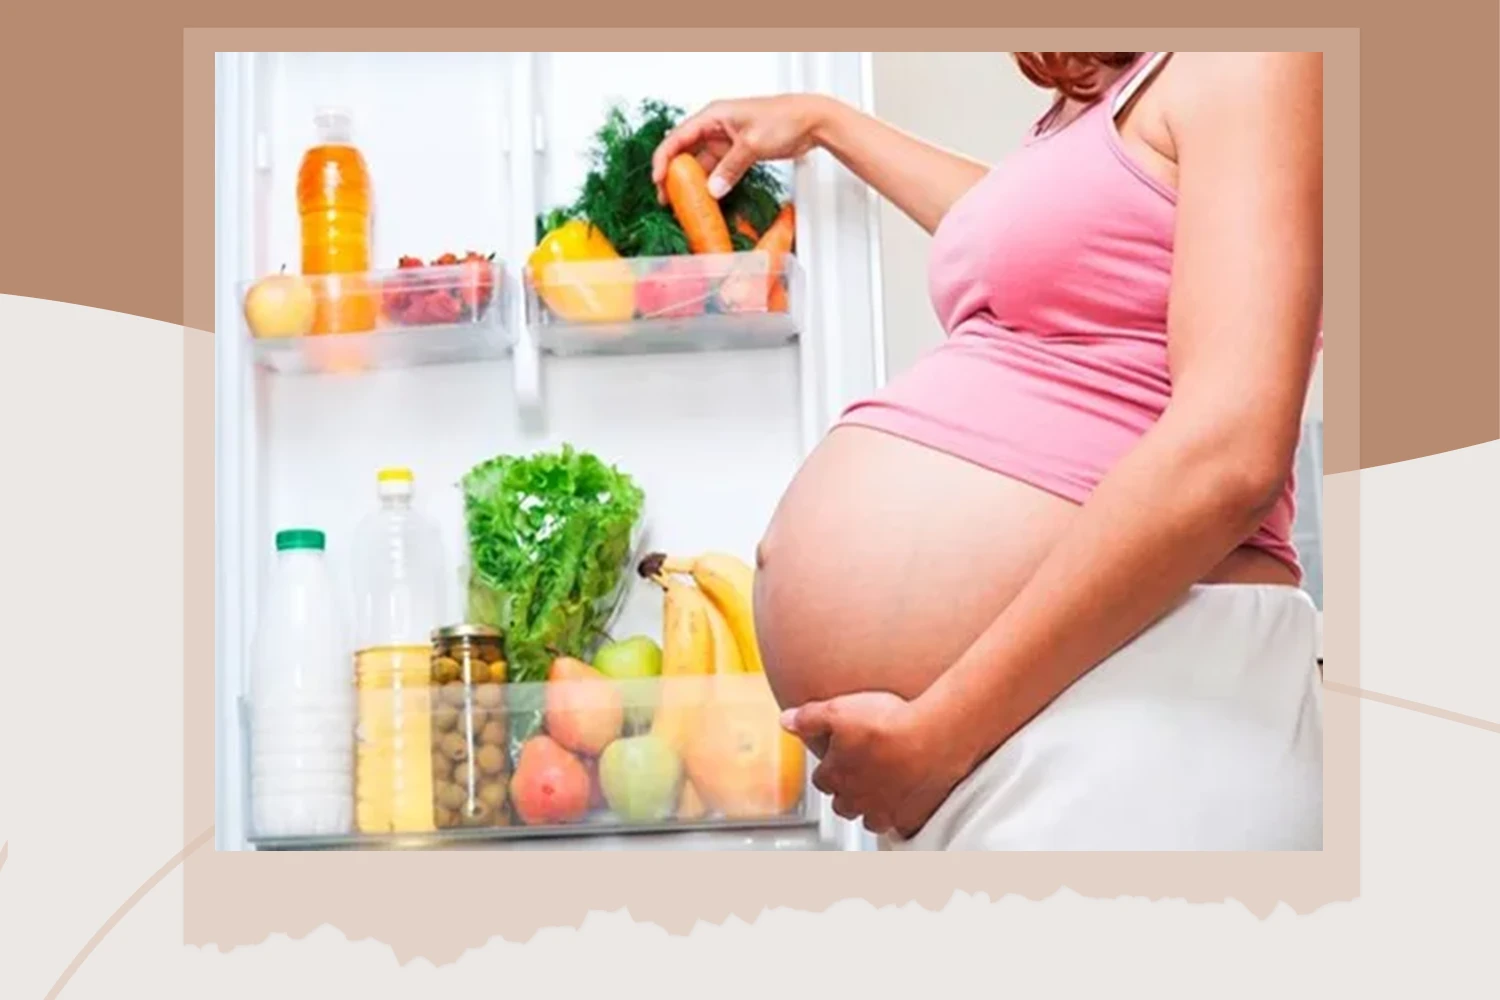 Betydelsen av näring under graviditeten